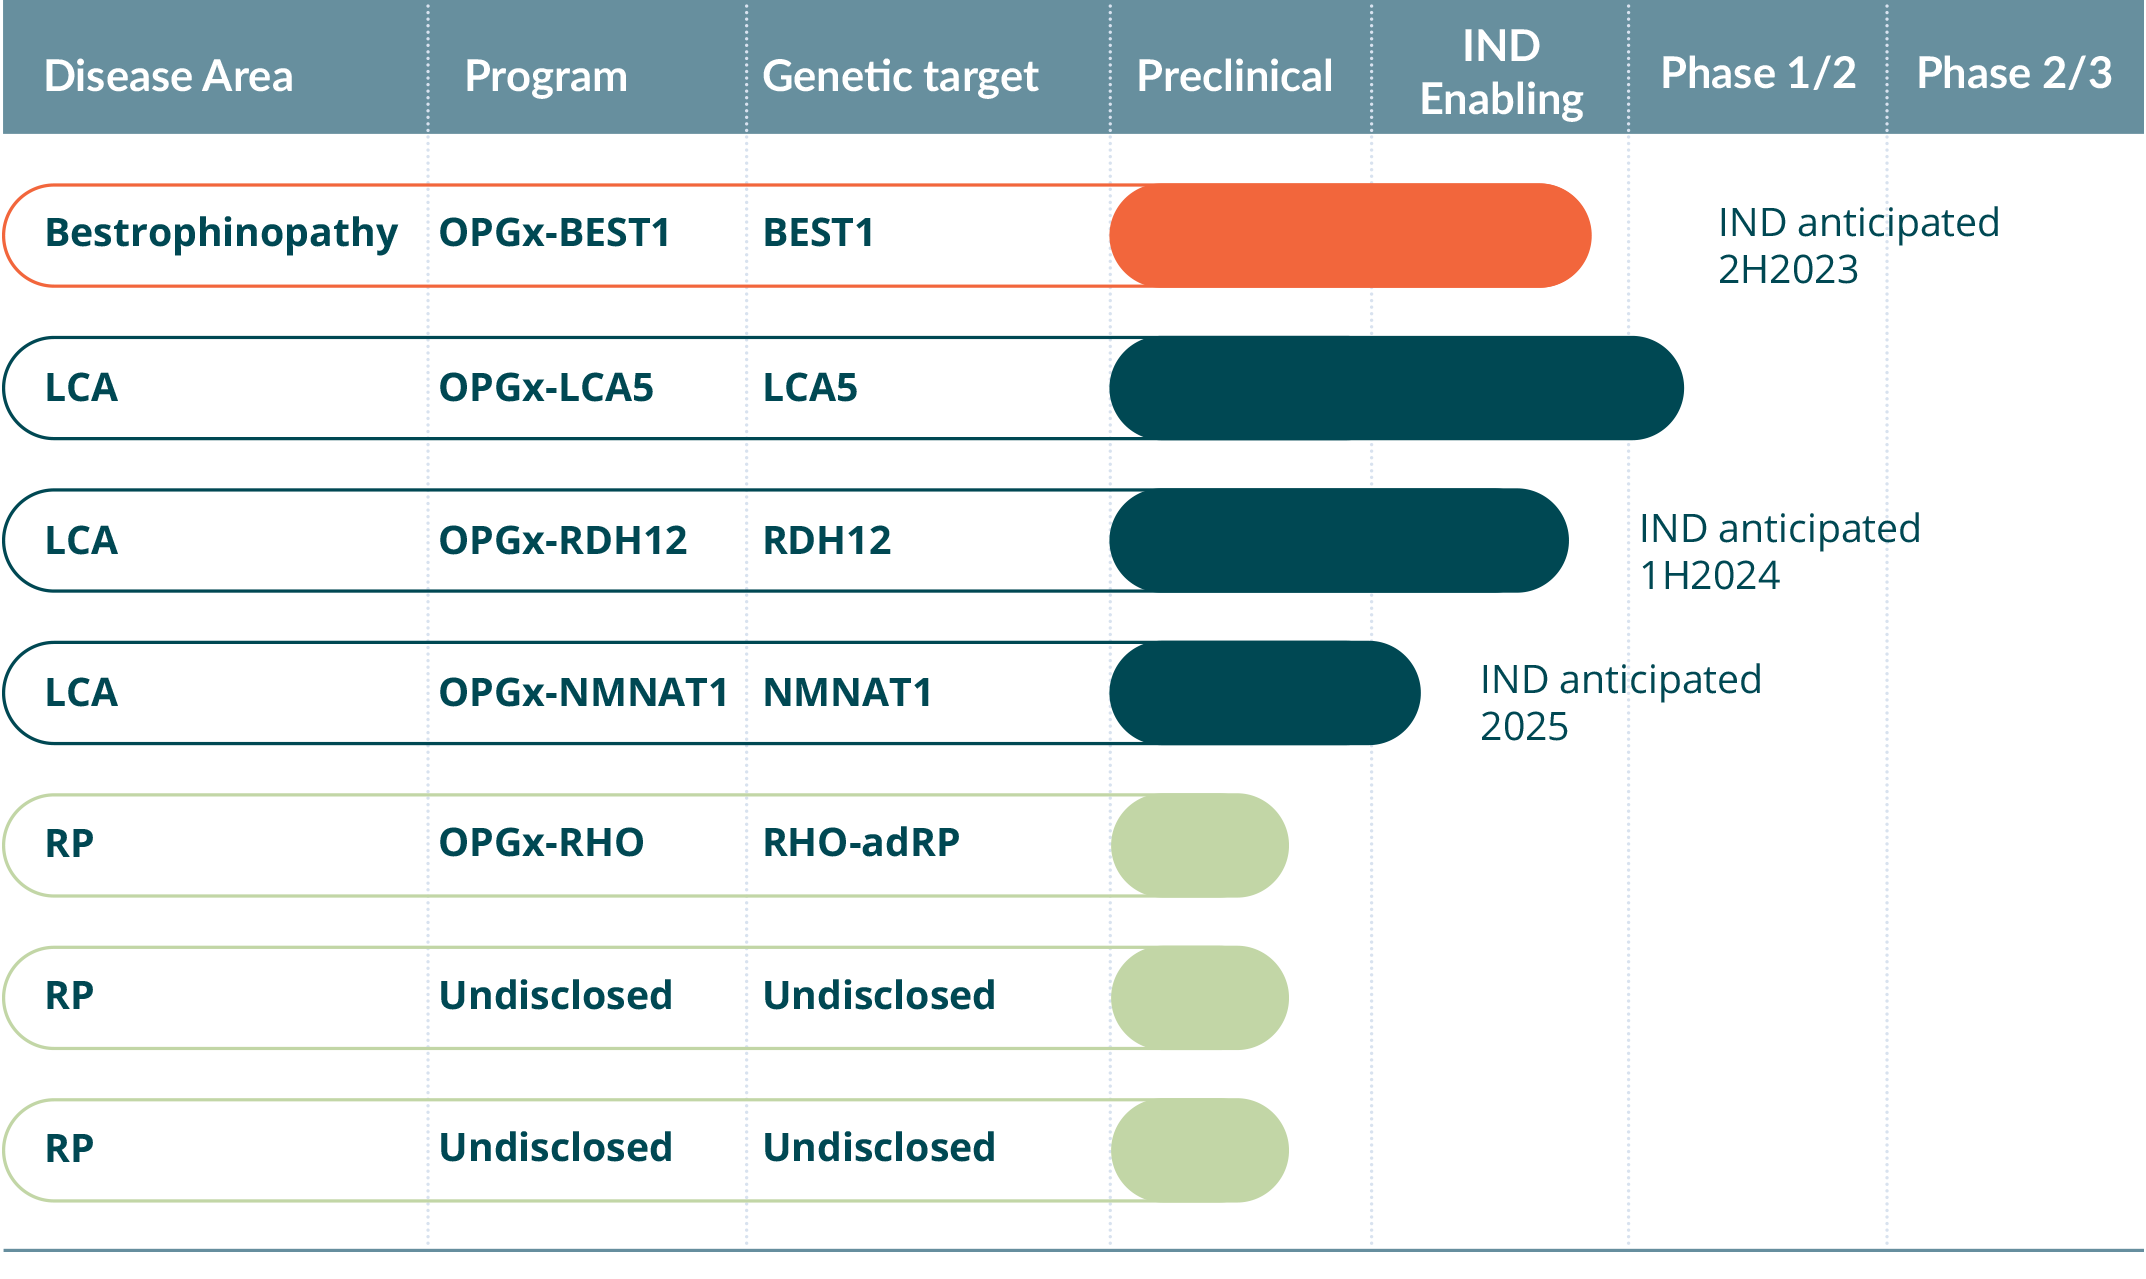 Opus pipeline 2-14-23 Programs in Bestrophinopathy, LCA5, RDH12, and NMNAT1